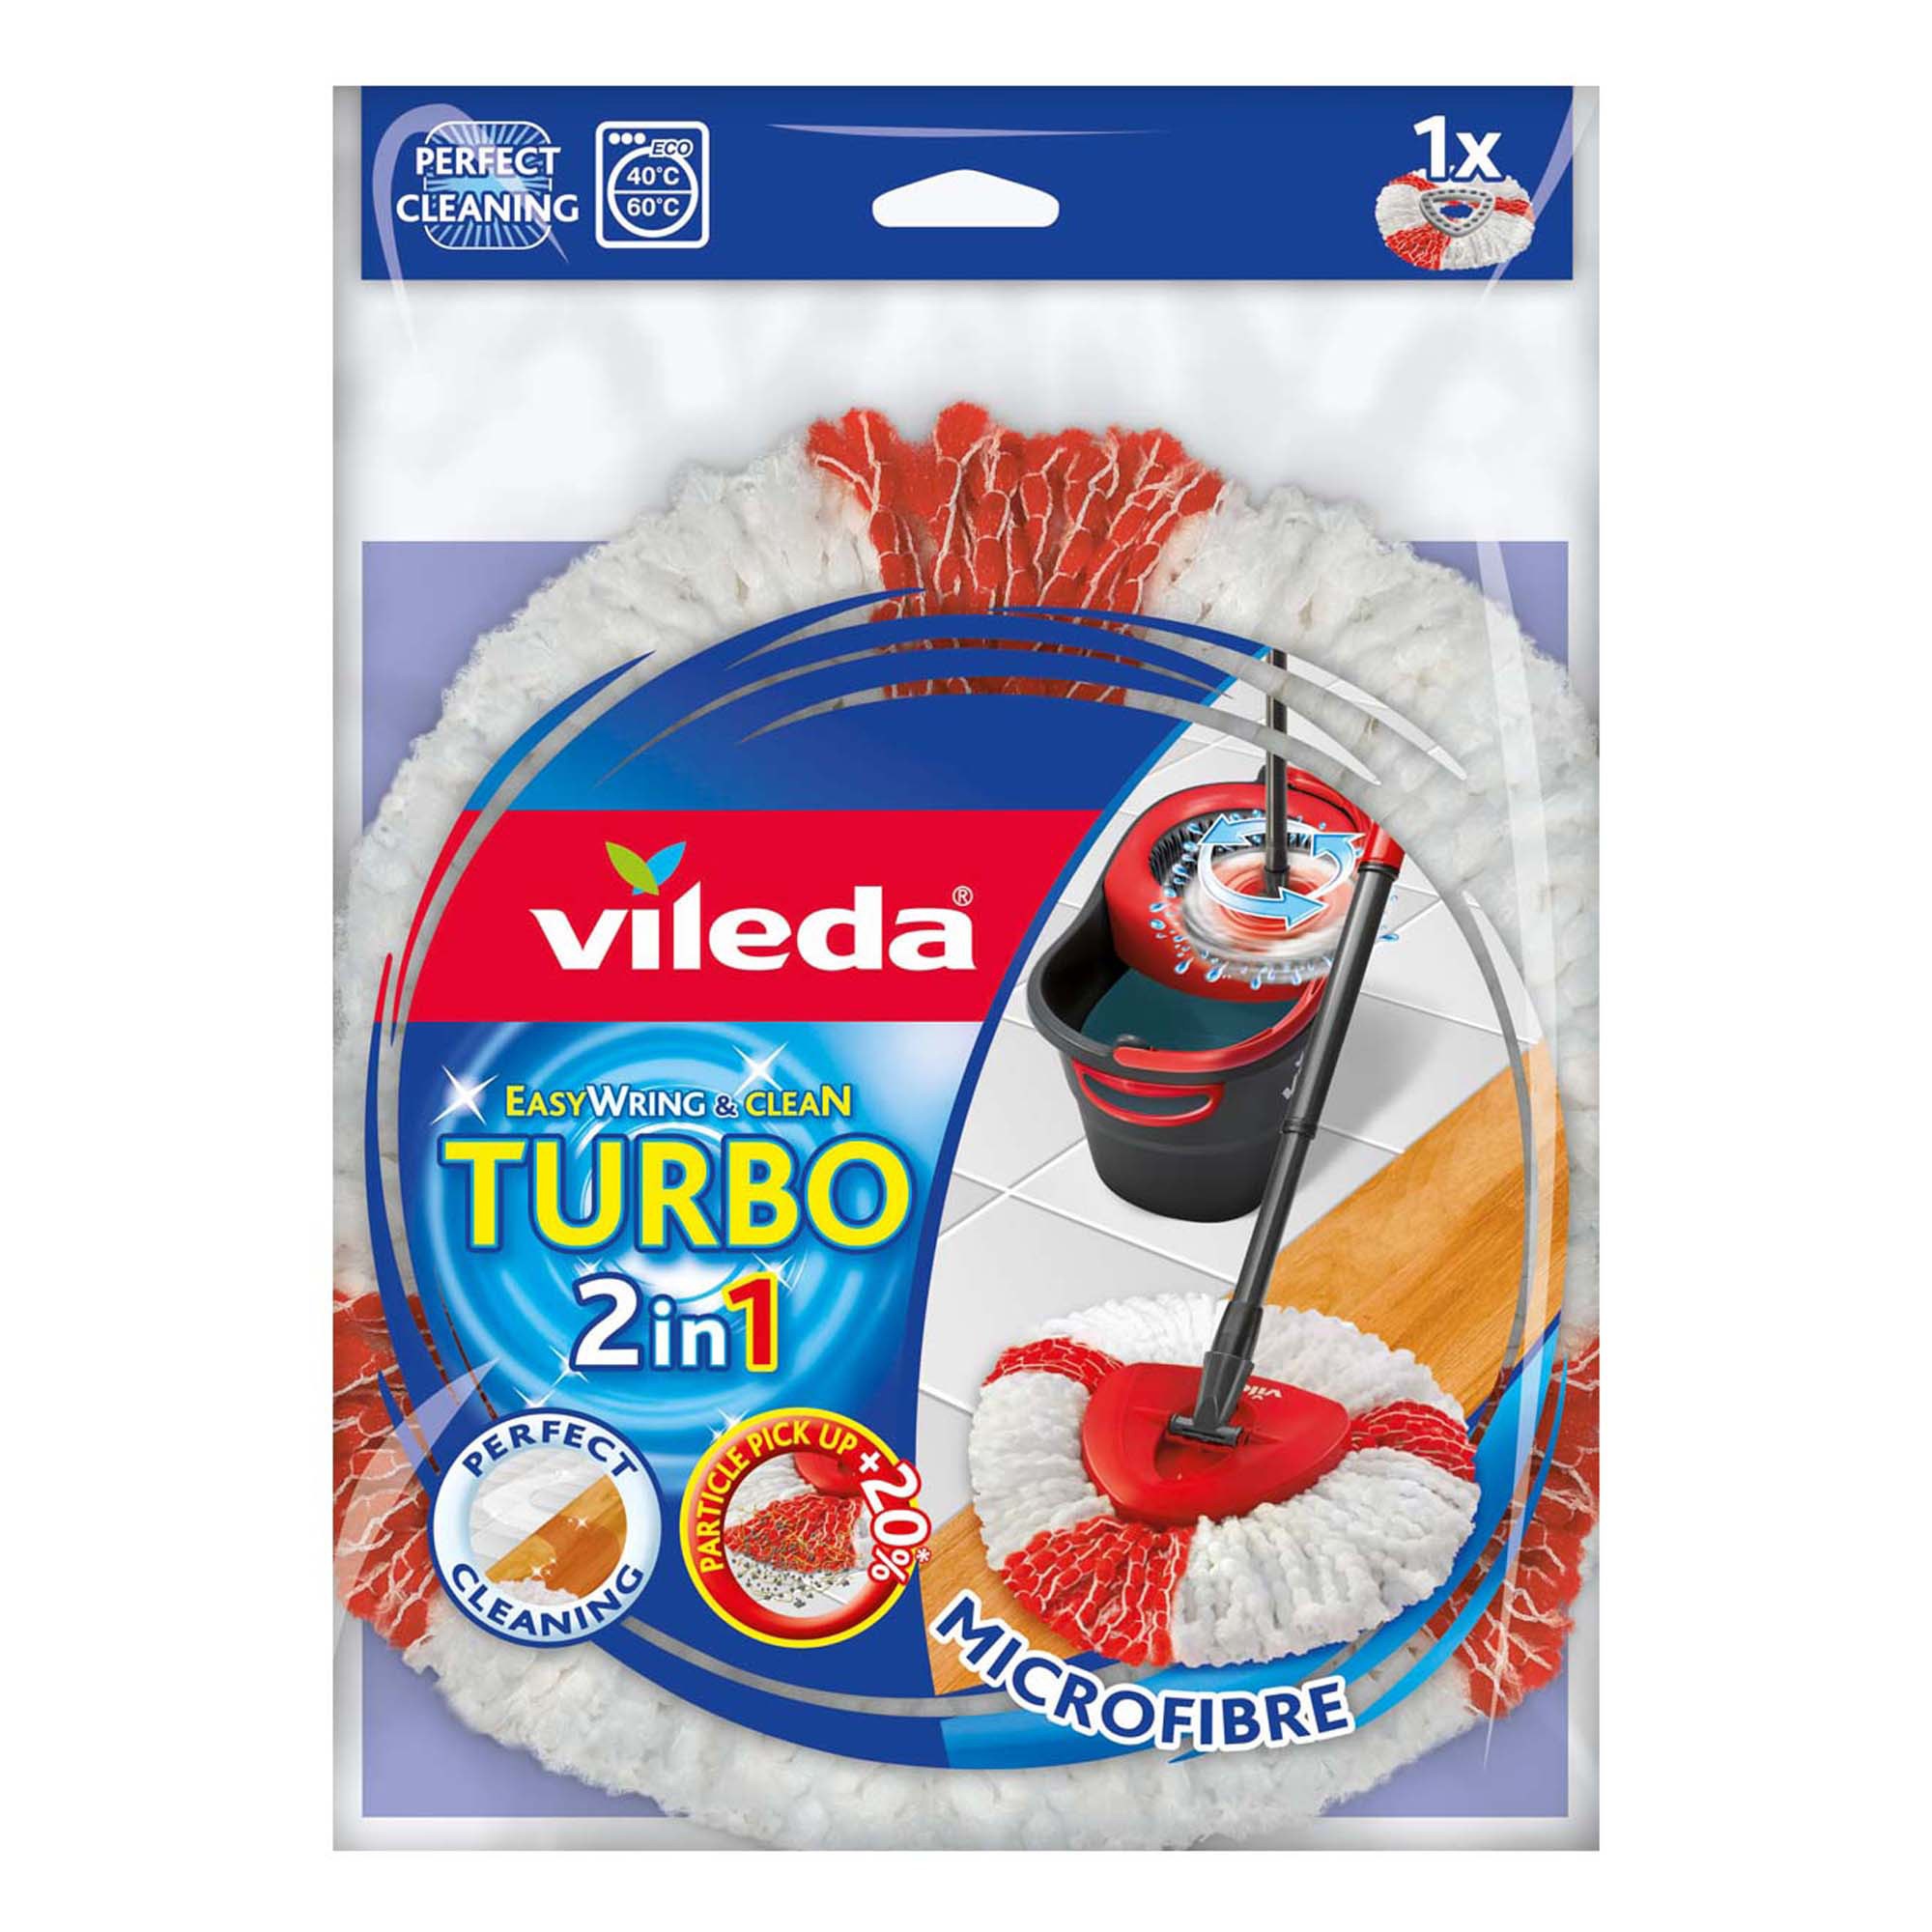 Rezerva mop bombac + microfibre Vileda Turbo 2 in 1, 6 x 2 x 24 cm